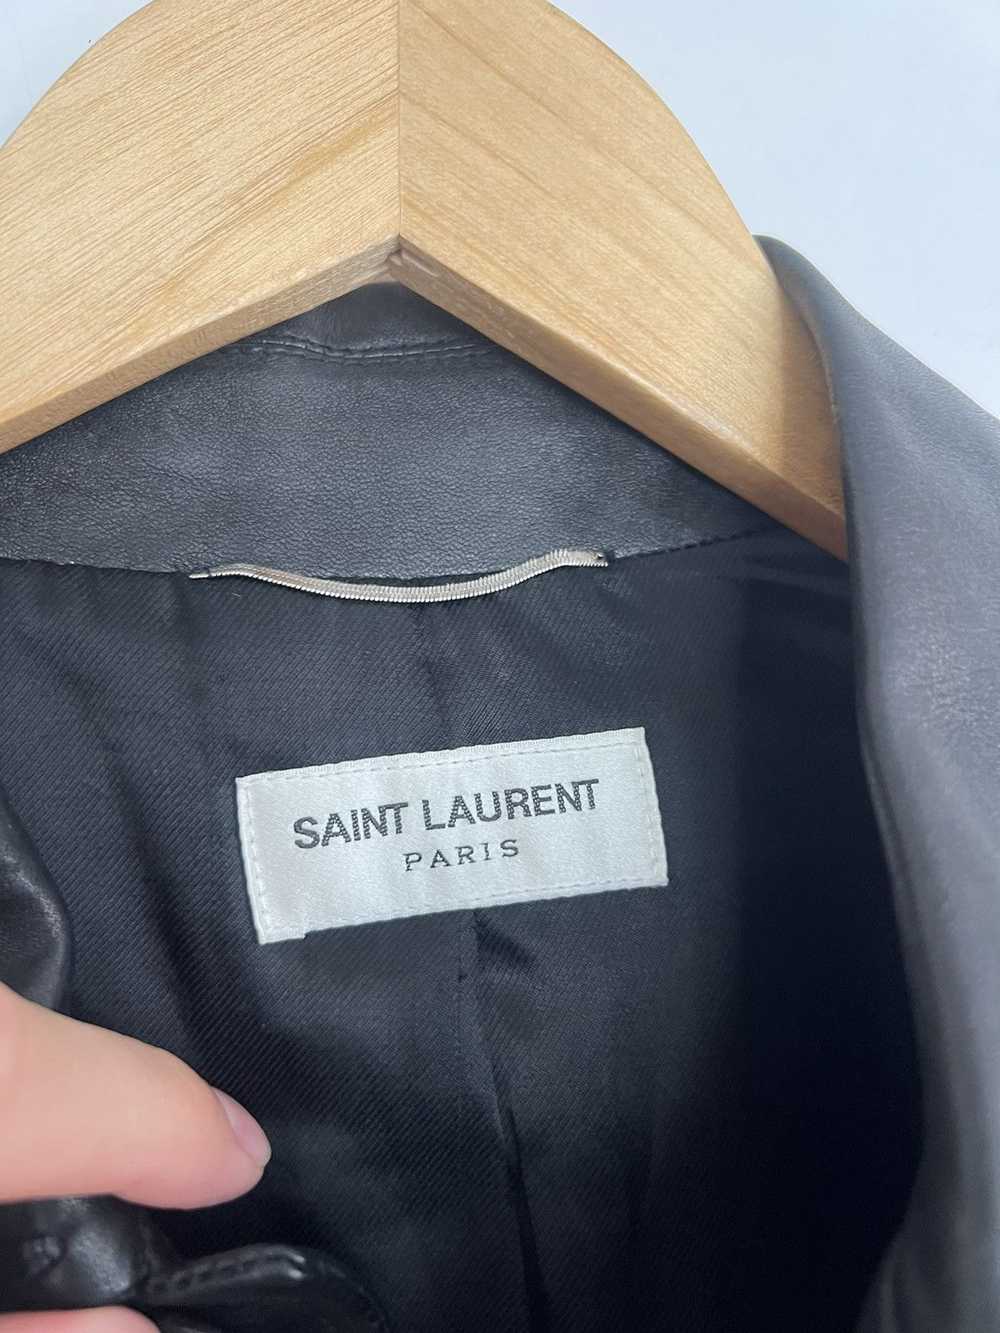 Saint Laurent Paris Leather Western Trapper - image 2